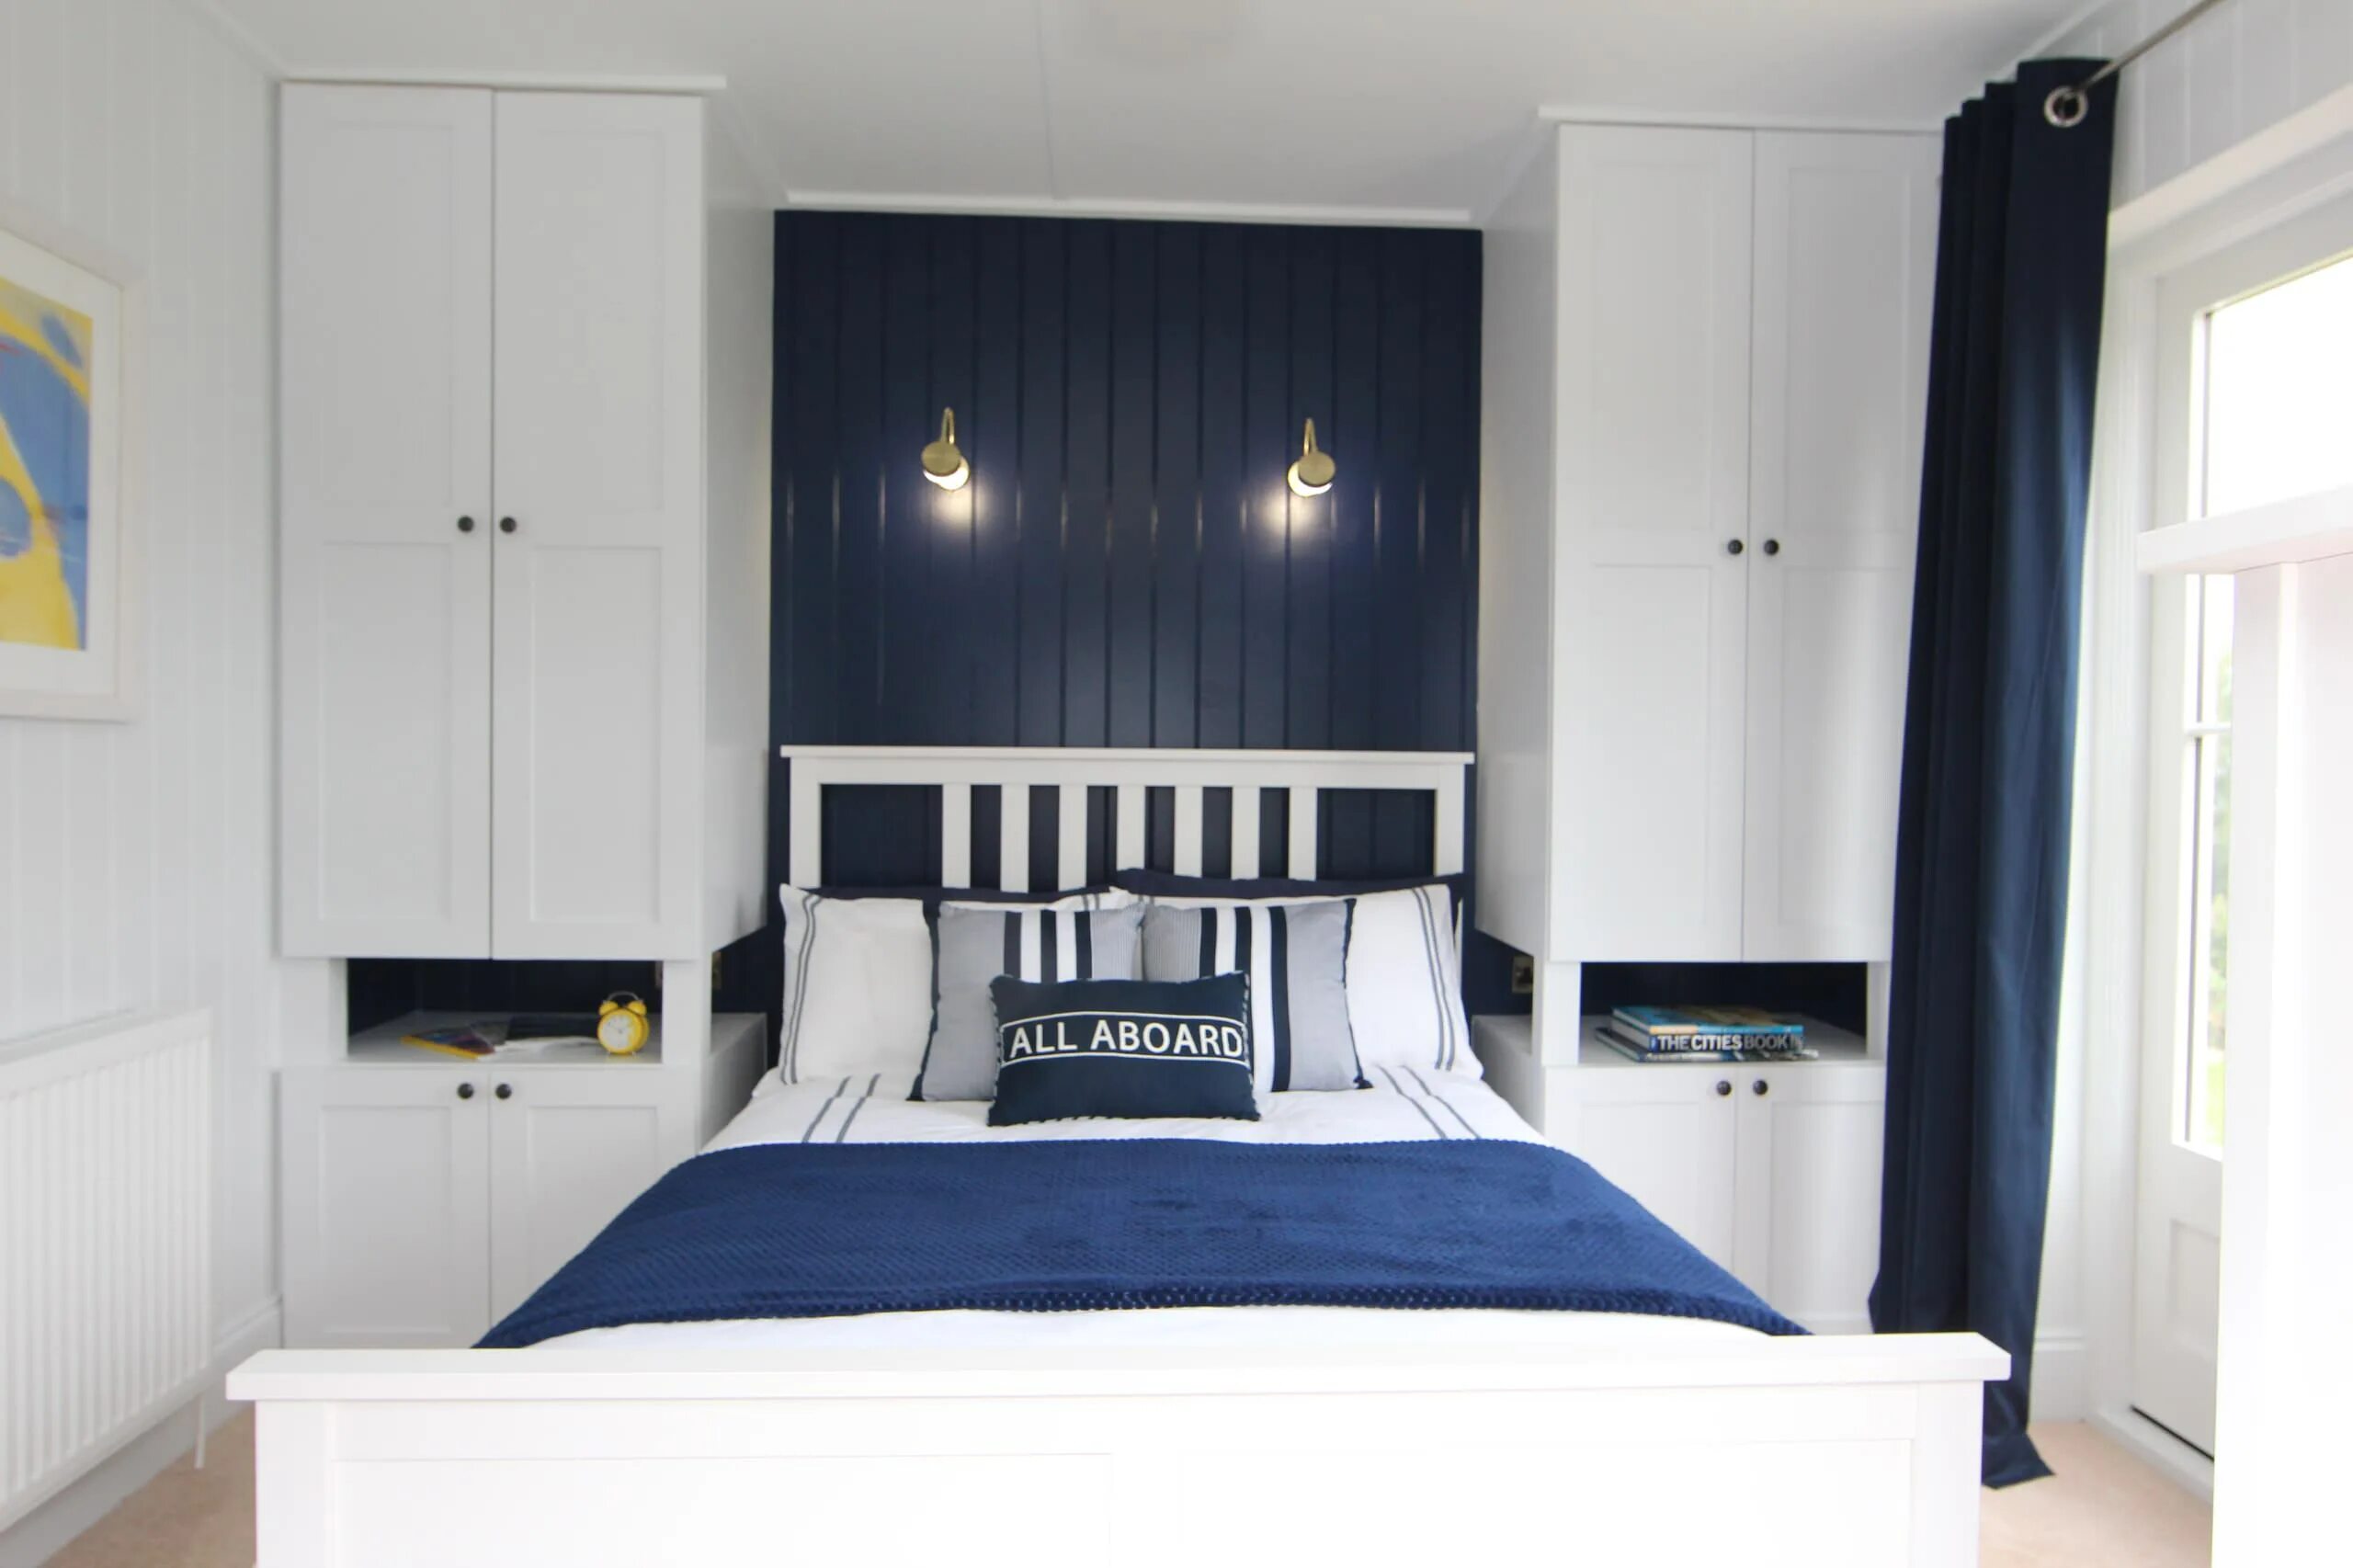 Кровать между шкафами. Шкаф в маленькой спальне. Синяя кровать в интерьере спальни. Кровать между шкафами в спальне.